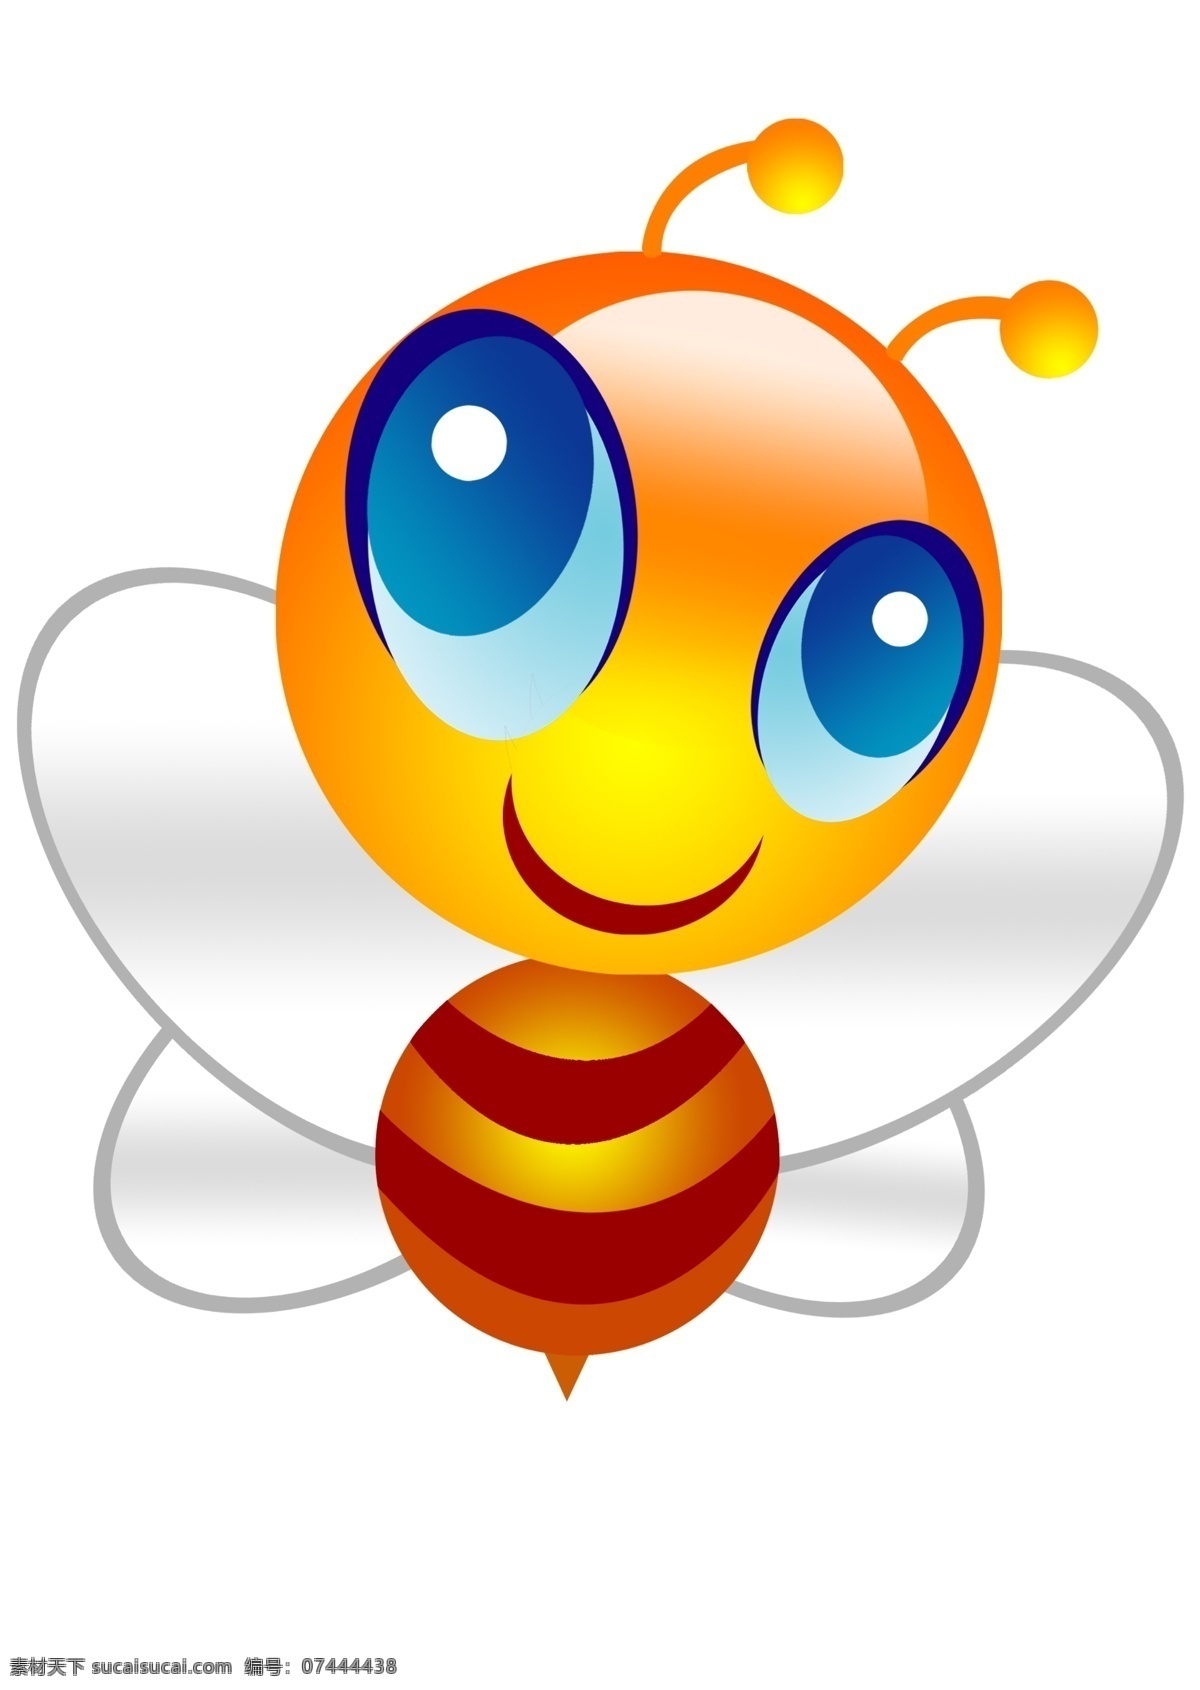 可爱蜜蜂 蜜蜂 可爱 卡通 动物 印花 童装 图案 动漫动画 动漫人物 卡通蜂蜜矢量 卡通蜜蜂 蜂蜜 小蜜蜂 蜜蜂图标 昆虫 黄色昆虫 采蜜 矢量蜜蜂 手绘蜜蜂